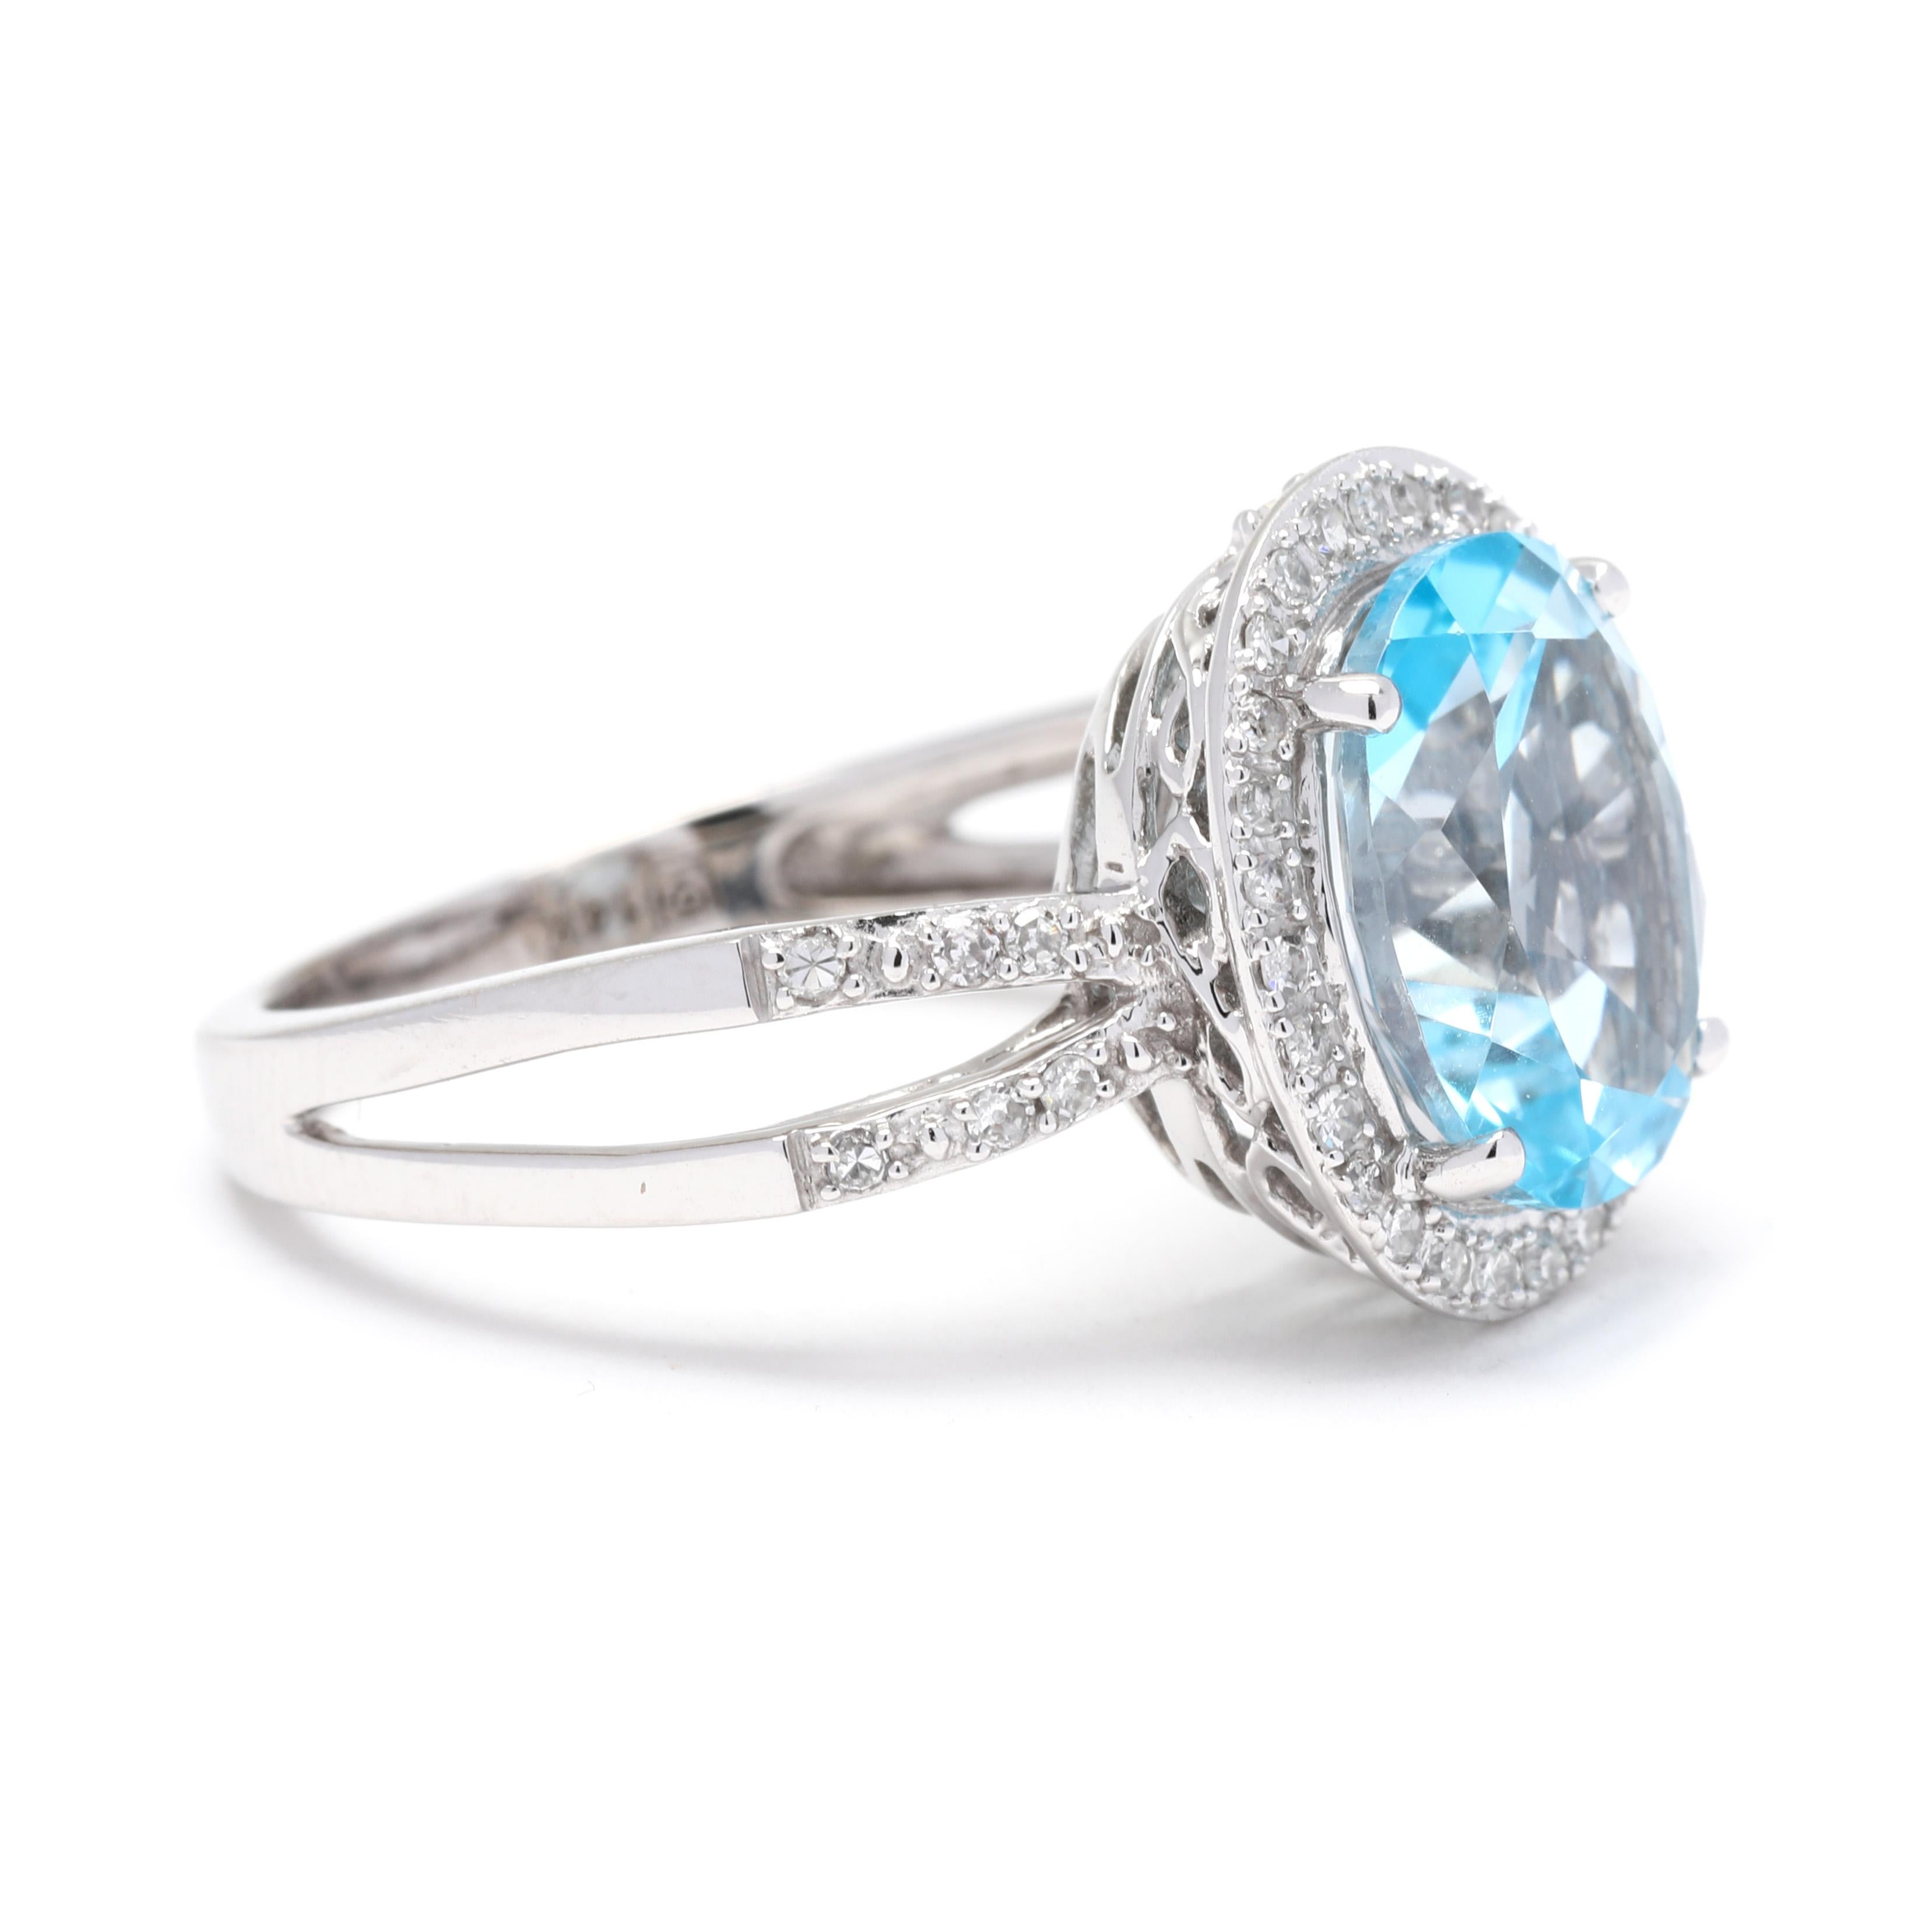 Dieser wunderschöne Ring zeigt einen 4,7 Karat schweren Blautopas, der von einem Halo aus funkelnden Diamanten umgeben ist. Das Design mit geteiltem Schaft verleiht diesem Klassiker eine moderne Note. Der Ring ist aus 14 Karat Weißgold gefertigt,